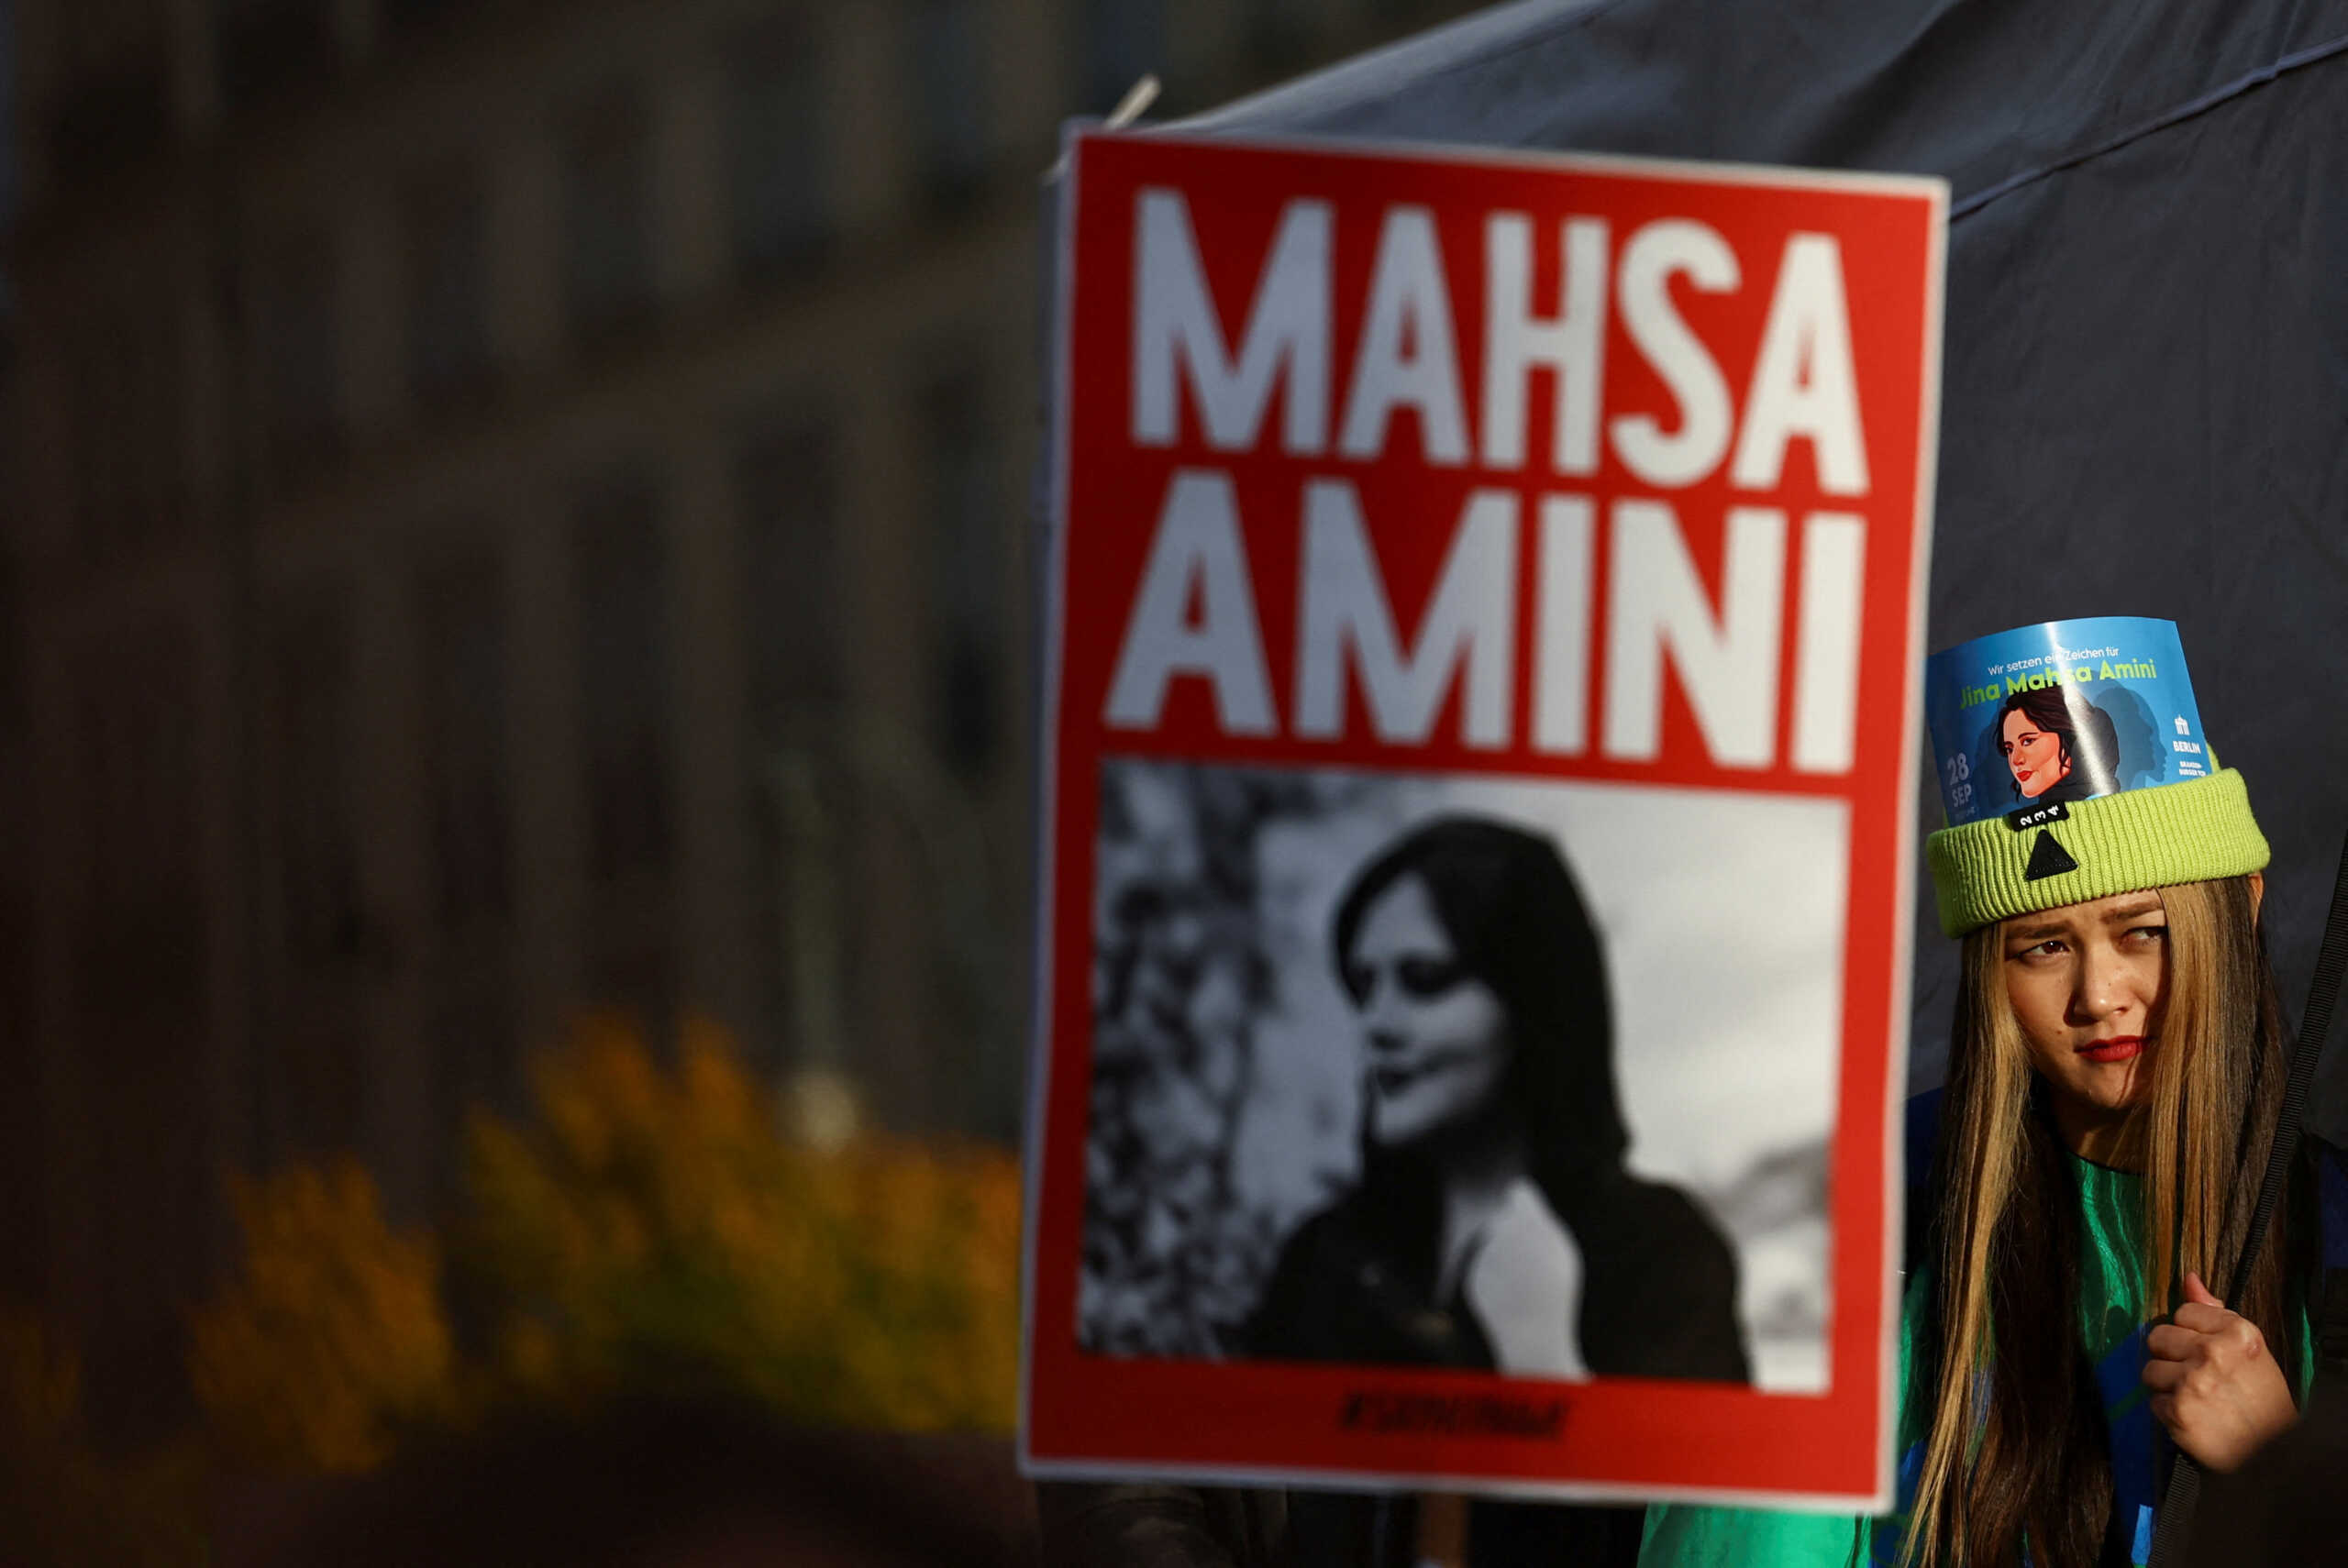 Επίτιμη δημότης η Μαχσά Αμινί στο Παρίσι «ώστε κανένας να μην την ξεχάσει» ανακοίνωσε η Αν Ινταλγό